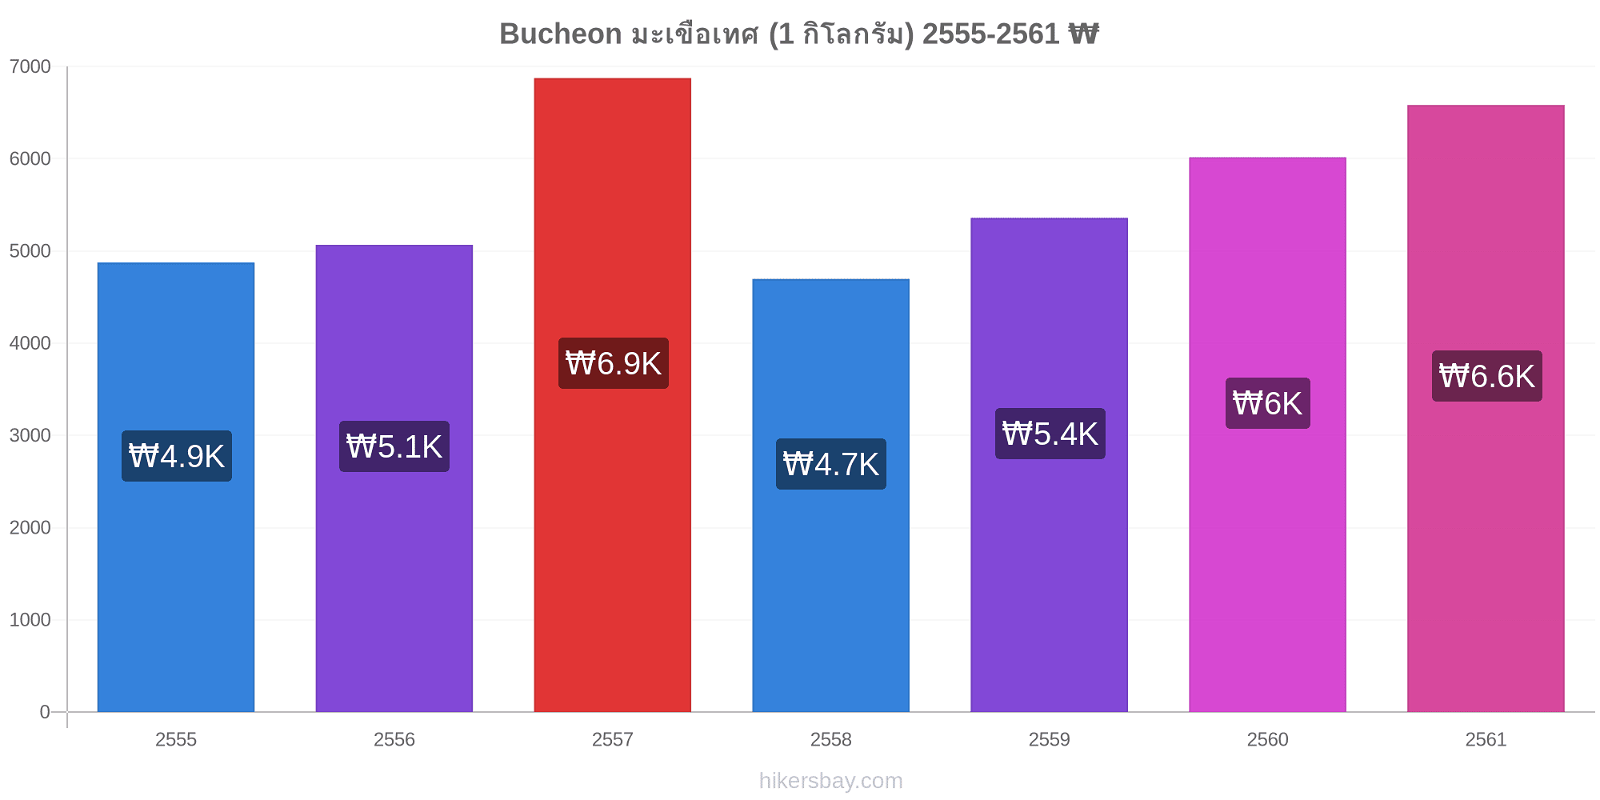 Bucheon การเปลี่ยนแปลงราคา มะเขือเทศ (1 กิโลกรัม) hikersbay.com